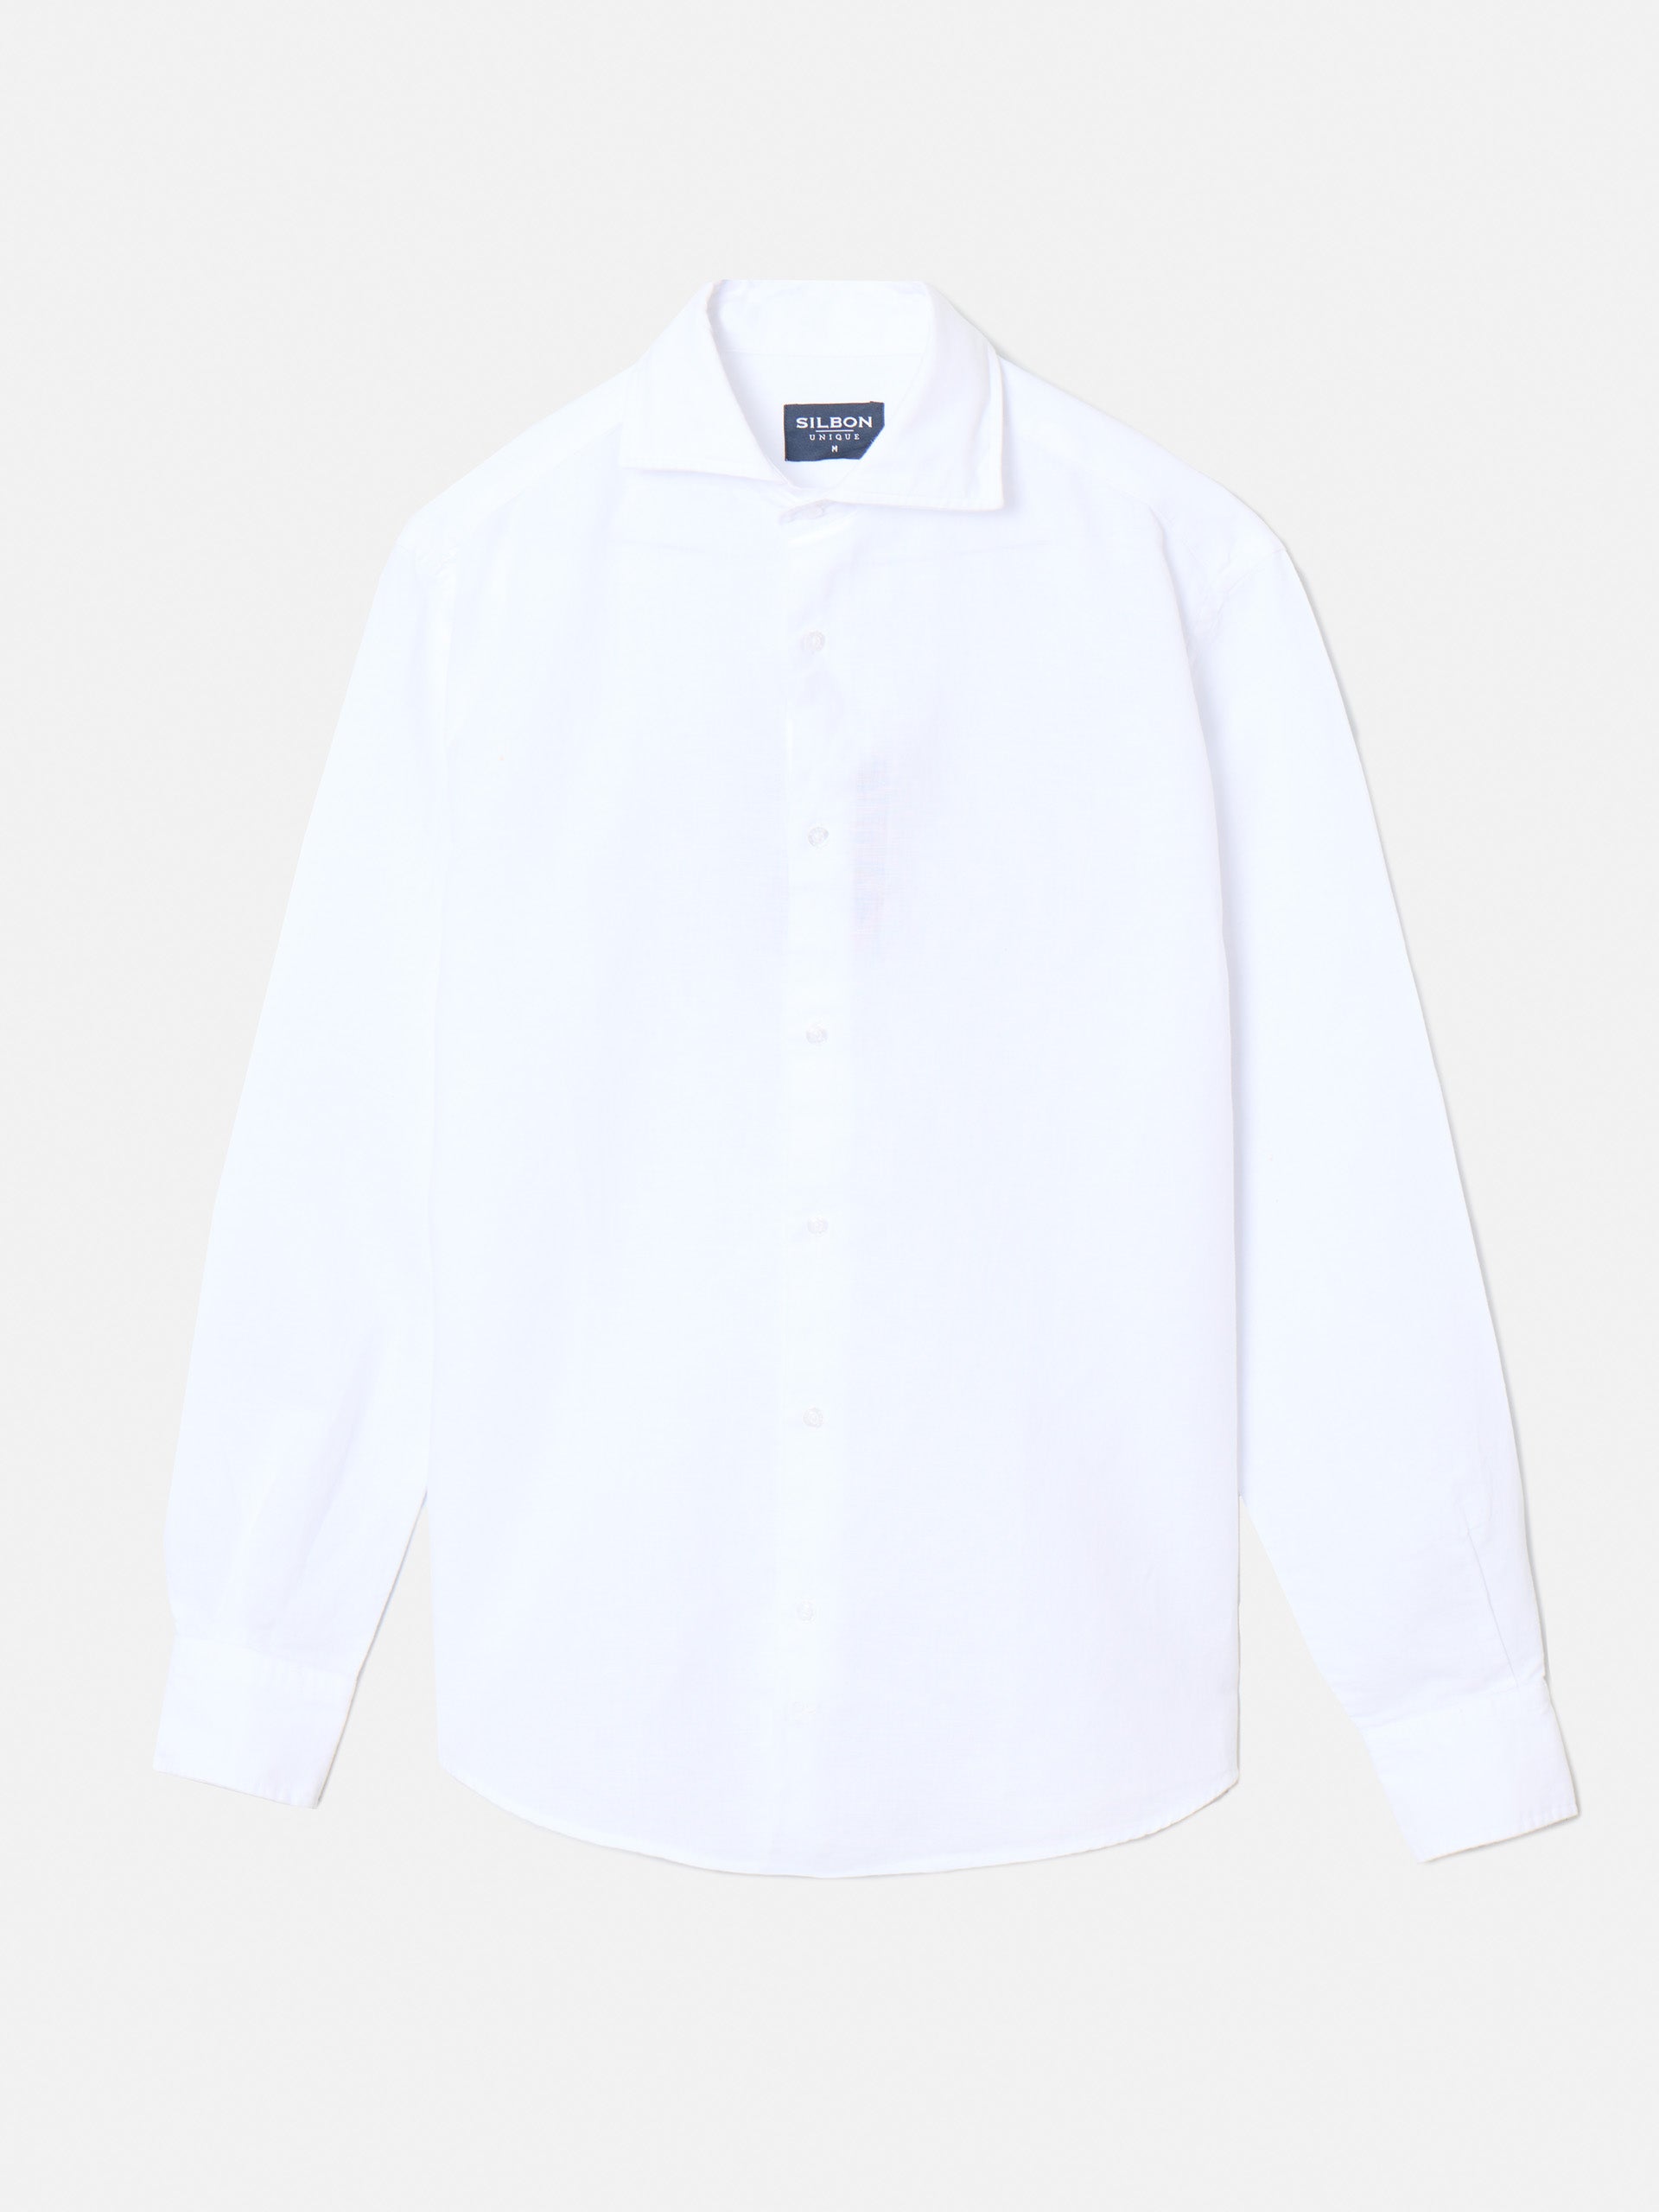 Unique white linen dress shirt